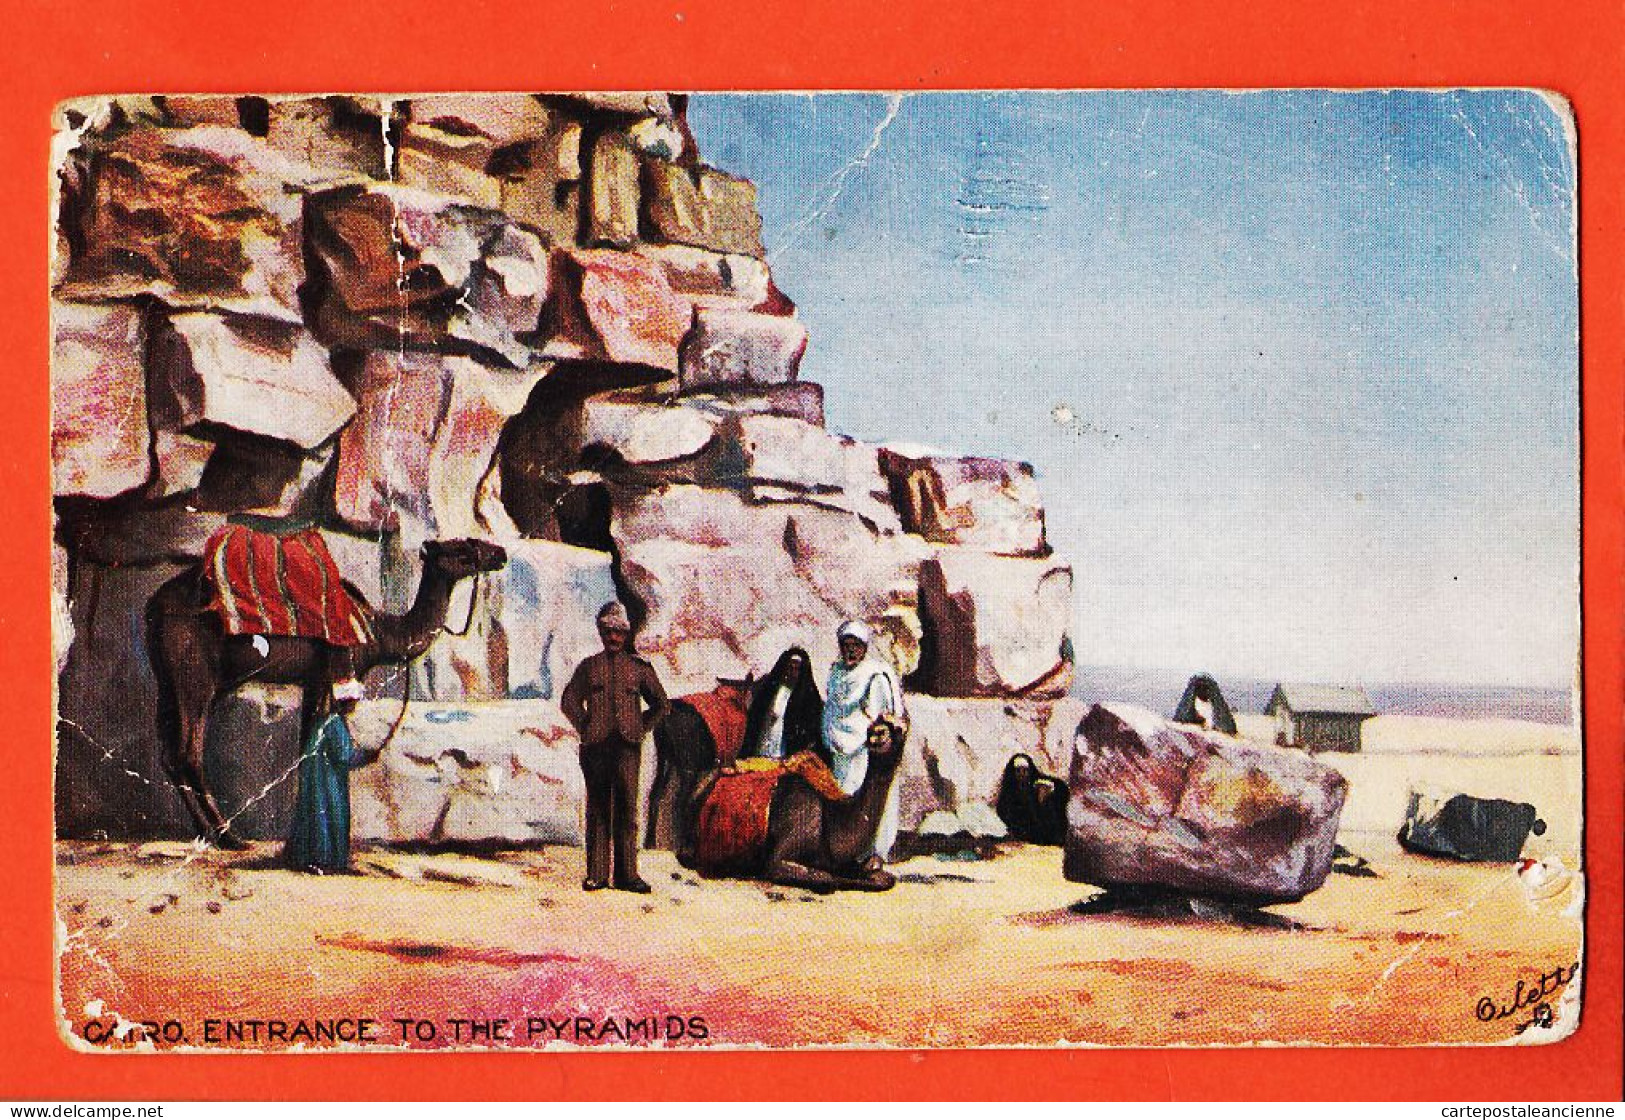 08045 ● CAIRO Entrance To The Pyramids Le CAIRE Entrée Pyramides 27-02-1911 à Suzanne LAMBA Raphael TUCK OILETTE - Pirámides